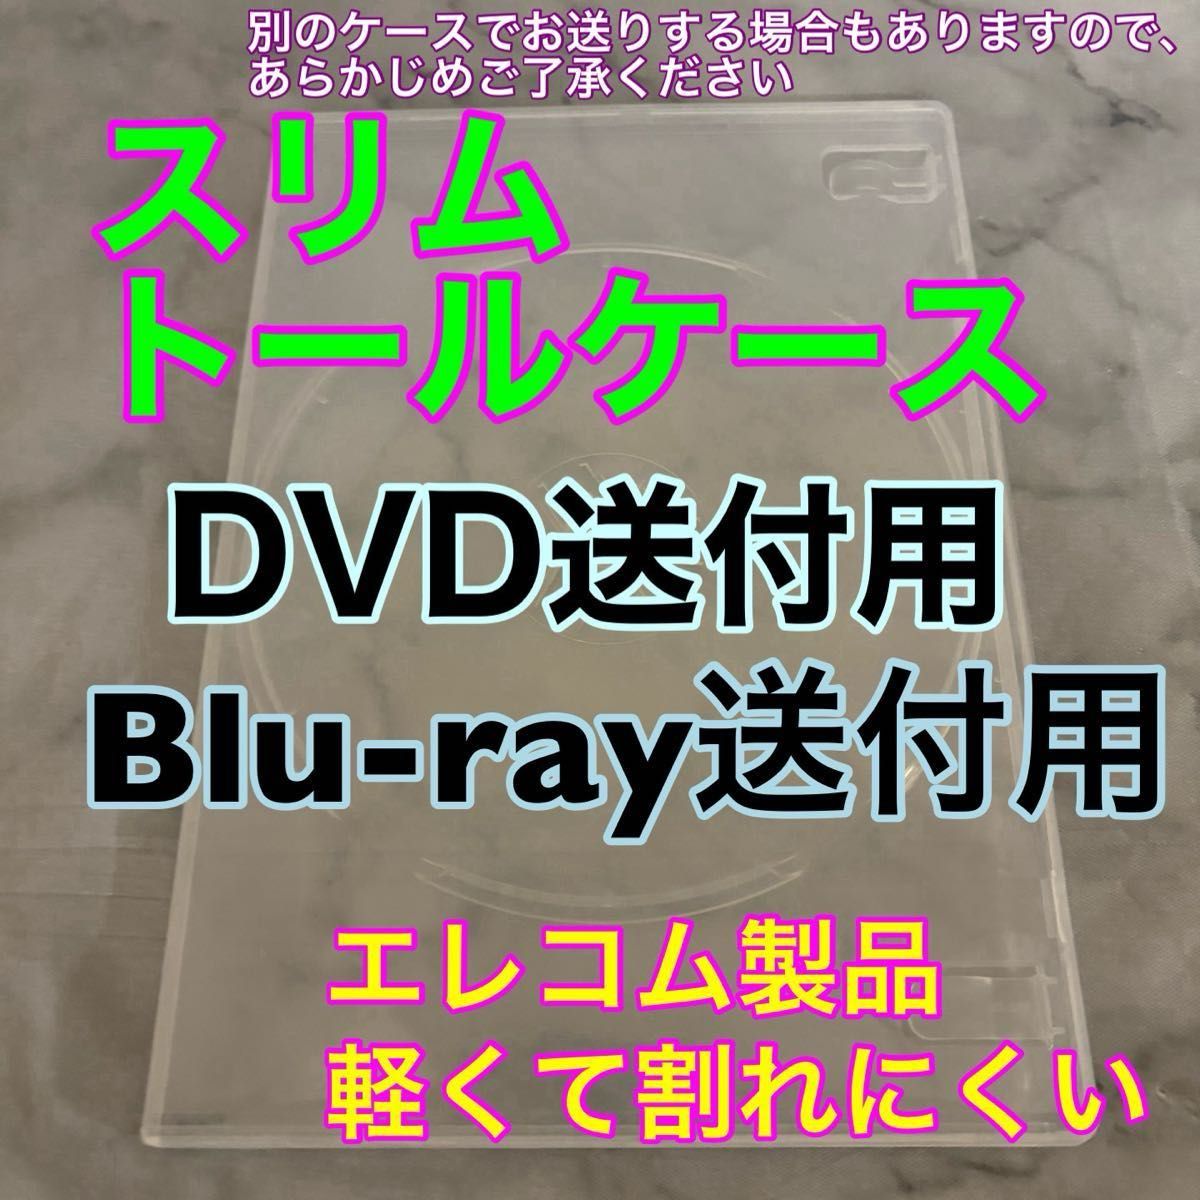 ②【新品未視聴】パウ・パトロール ザ・マイティ・ムービー  Blu-rayブルーレイ＋市販ケース